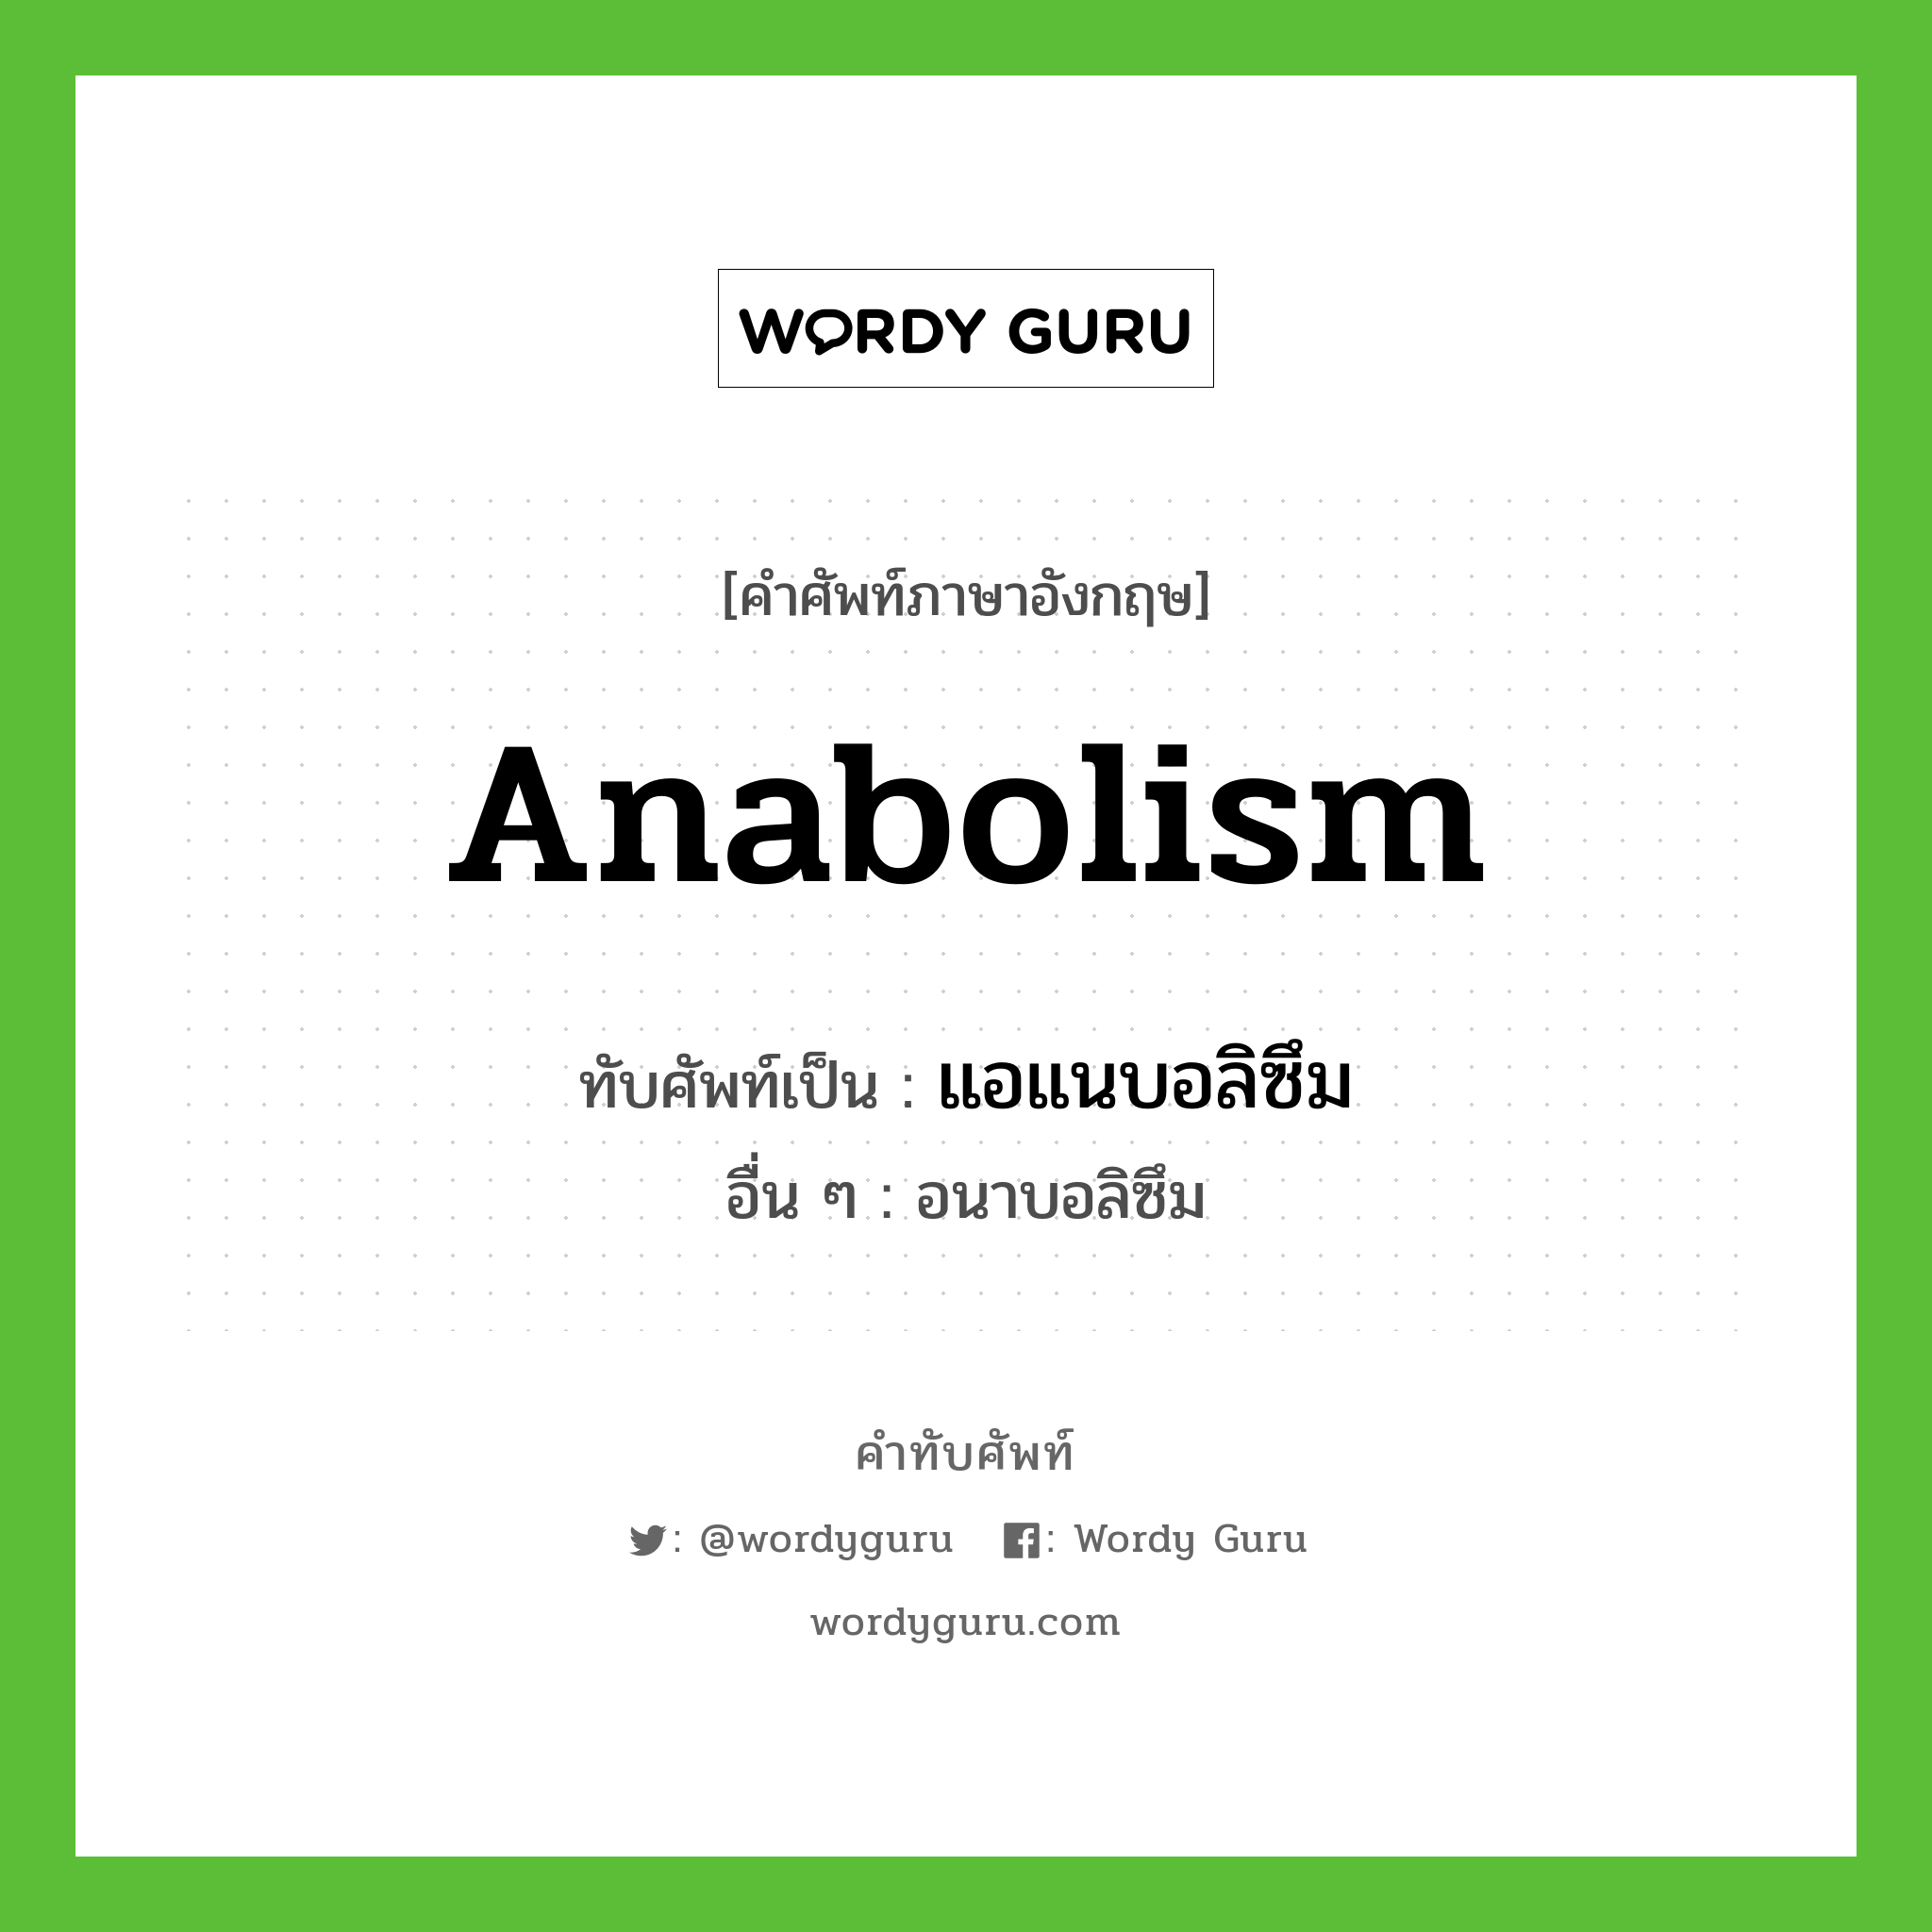 Anabolism เขียนเป็นคำไทยว่าอะไร?, คำศัพท์ภาษาอังกฤษ Anabolism ทับศัพท์เป็น แอแนบอลิซึม อื่น ๆ อนาบอลิซึม